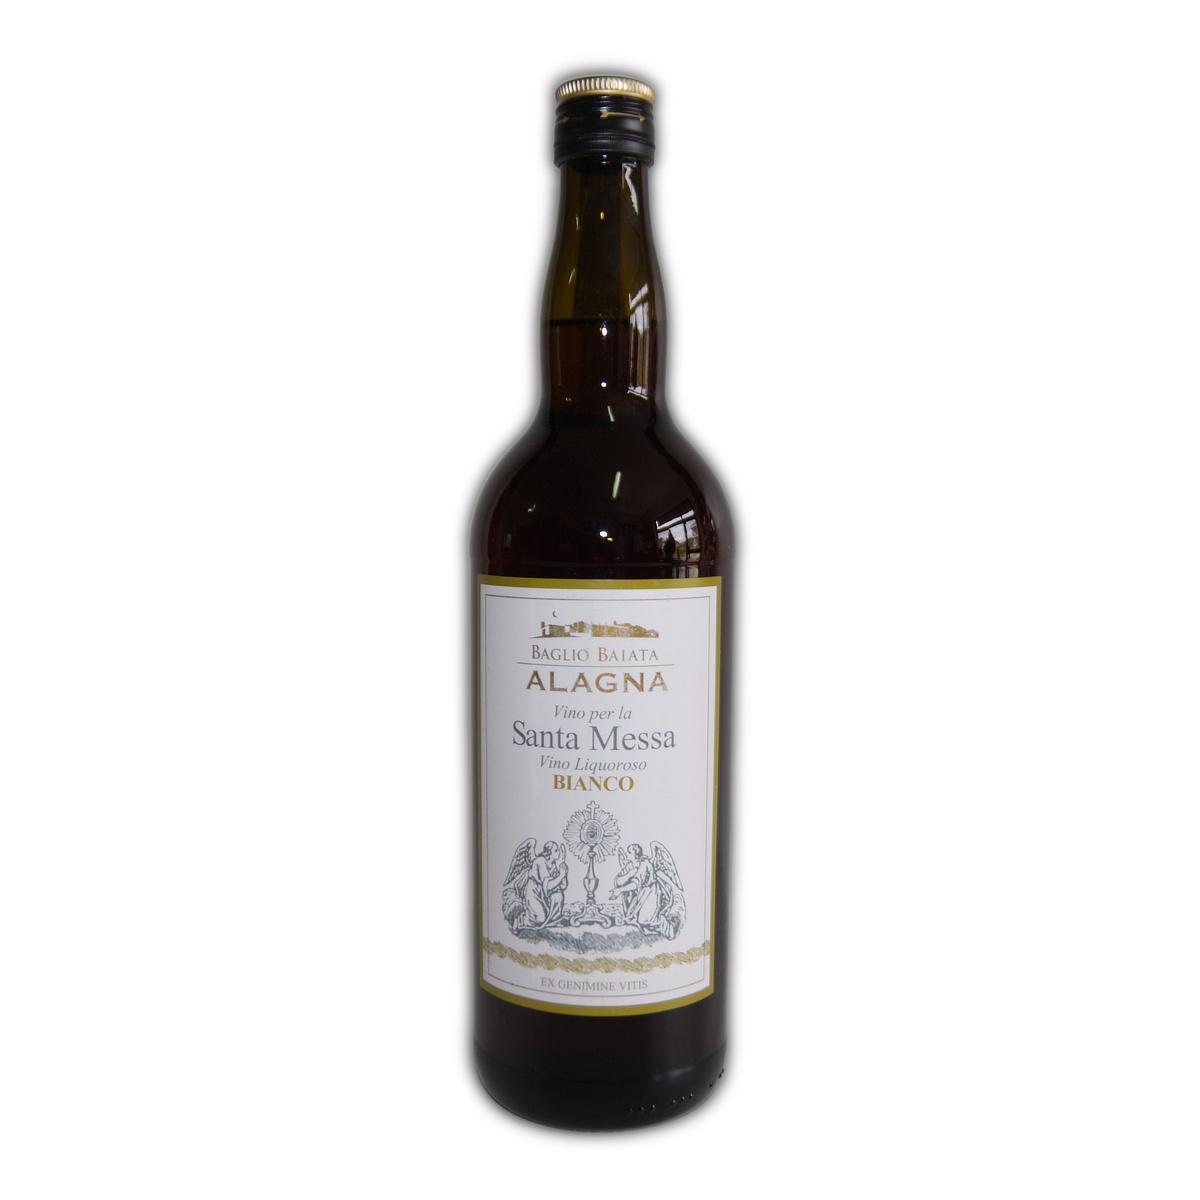 Vino bianco liquoroso per Santa Messa Alagna - Foto 1